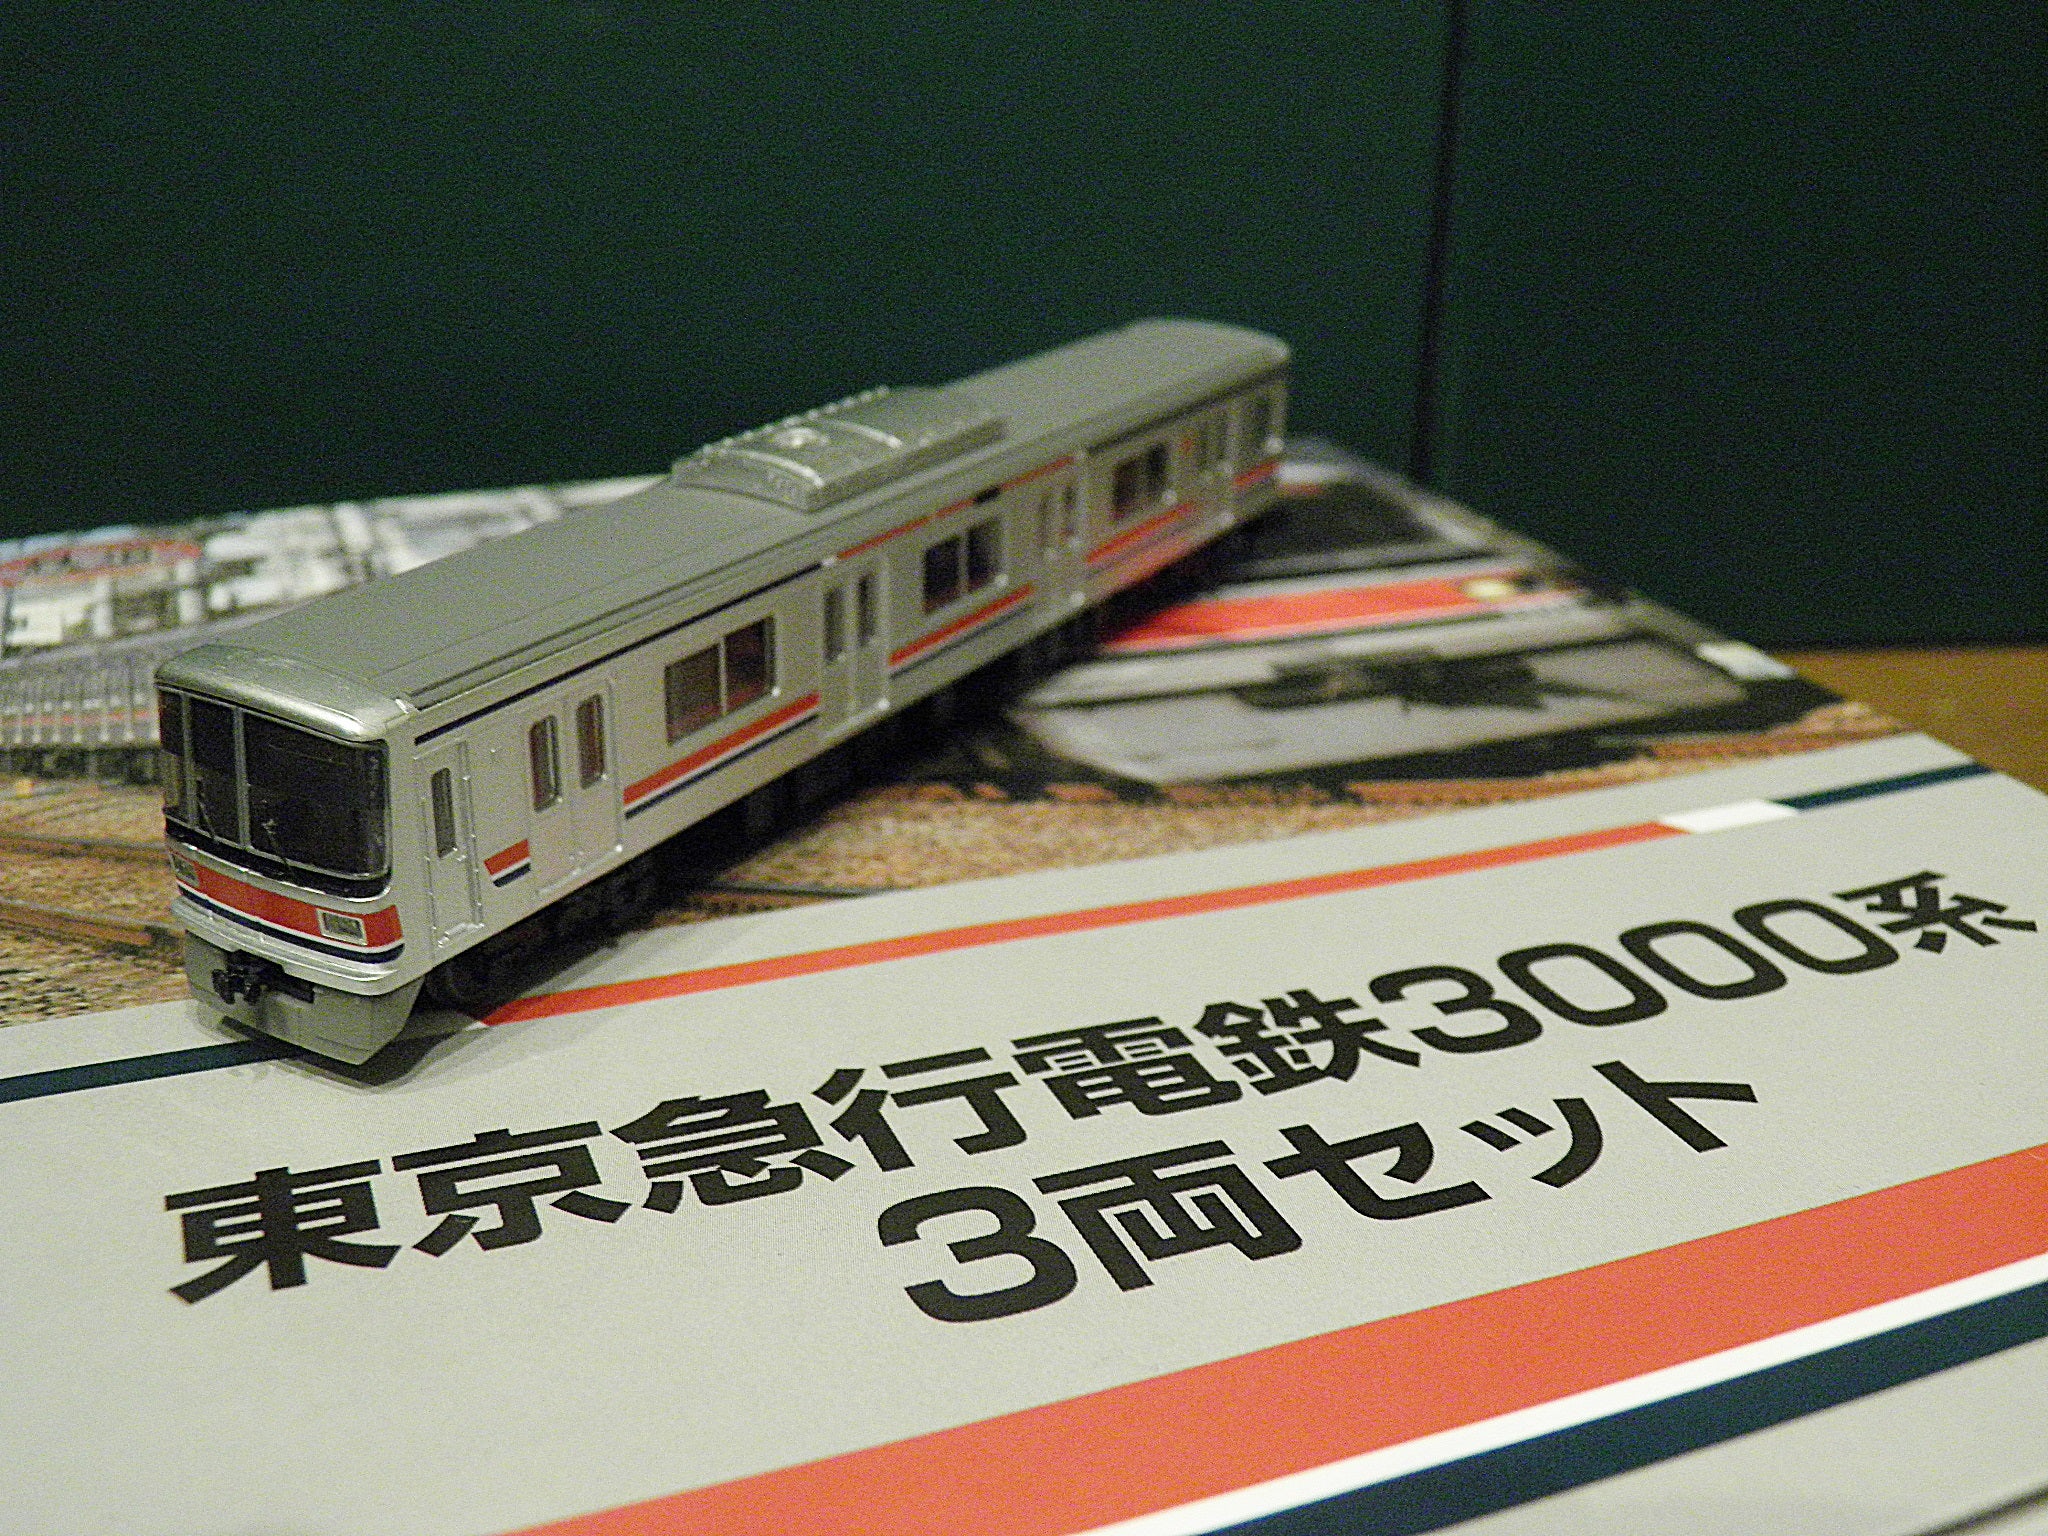 総合車両電車市場オリジナル鉄道コレクション 東急3000系3両セット の